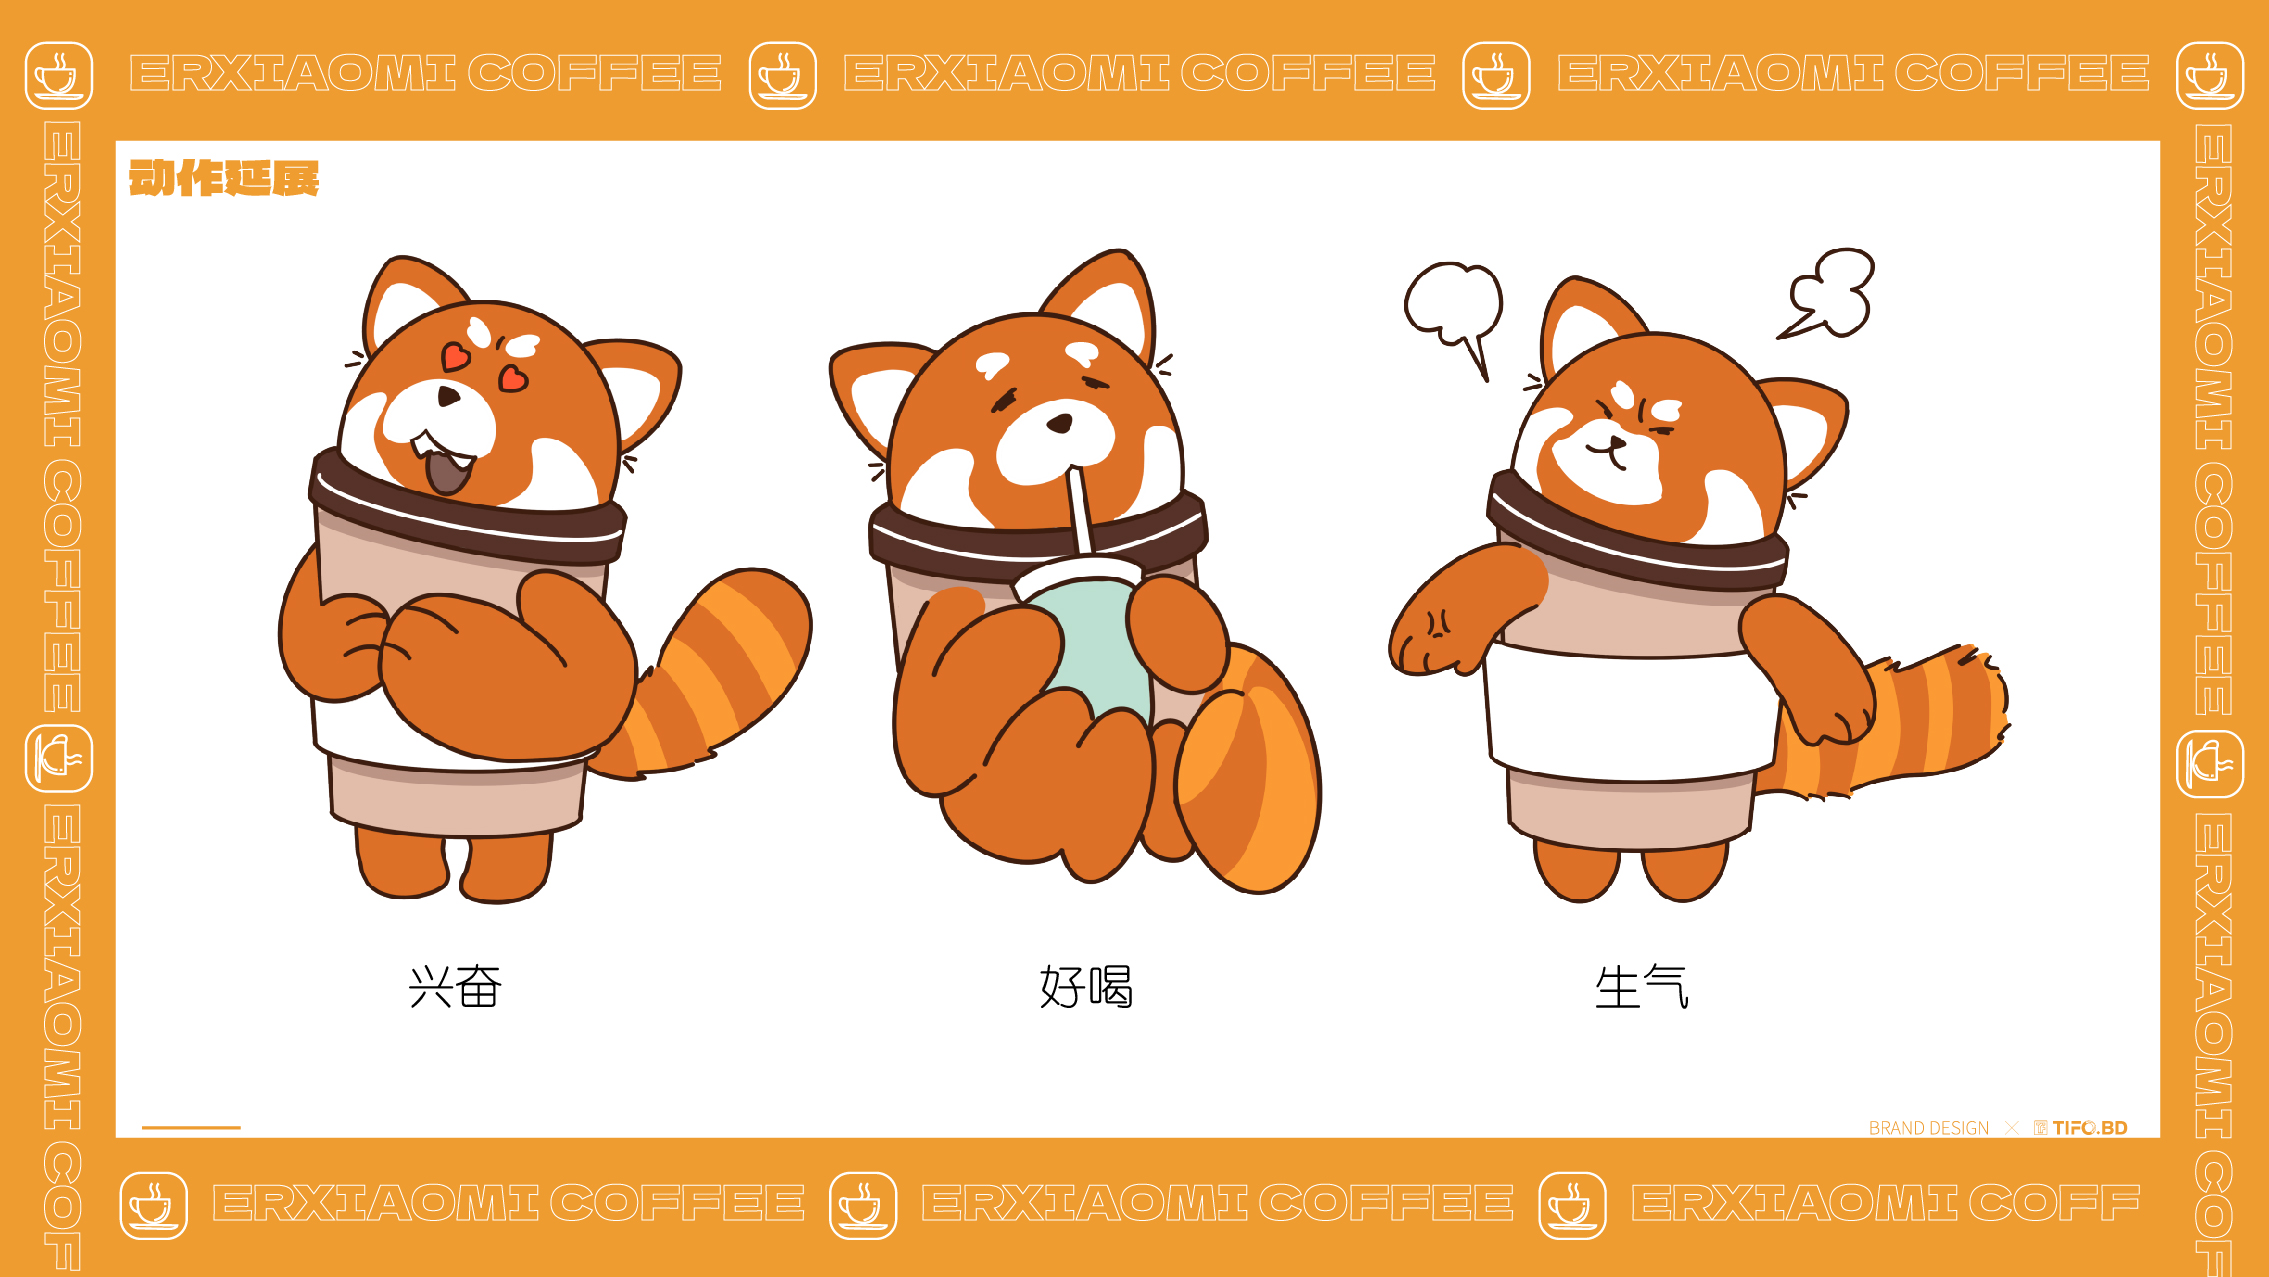 咖啡IP吉祥物丨品牌全案设计 (10).jpg